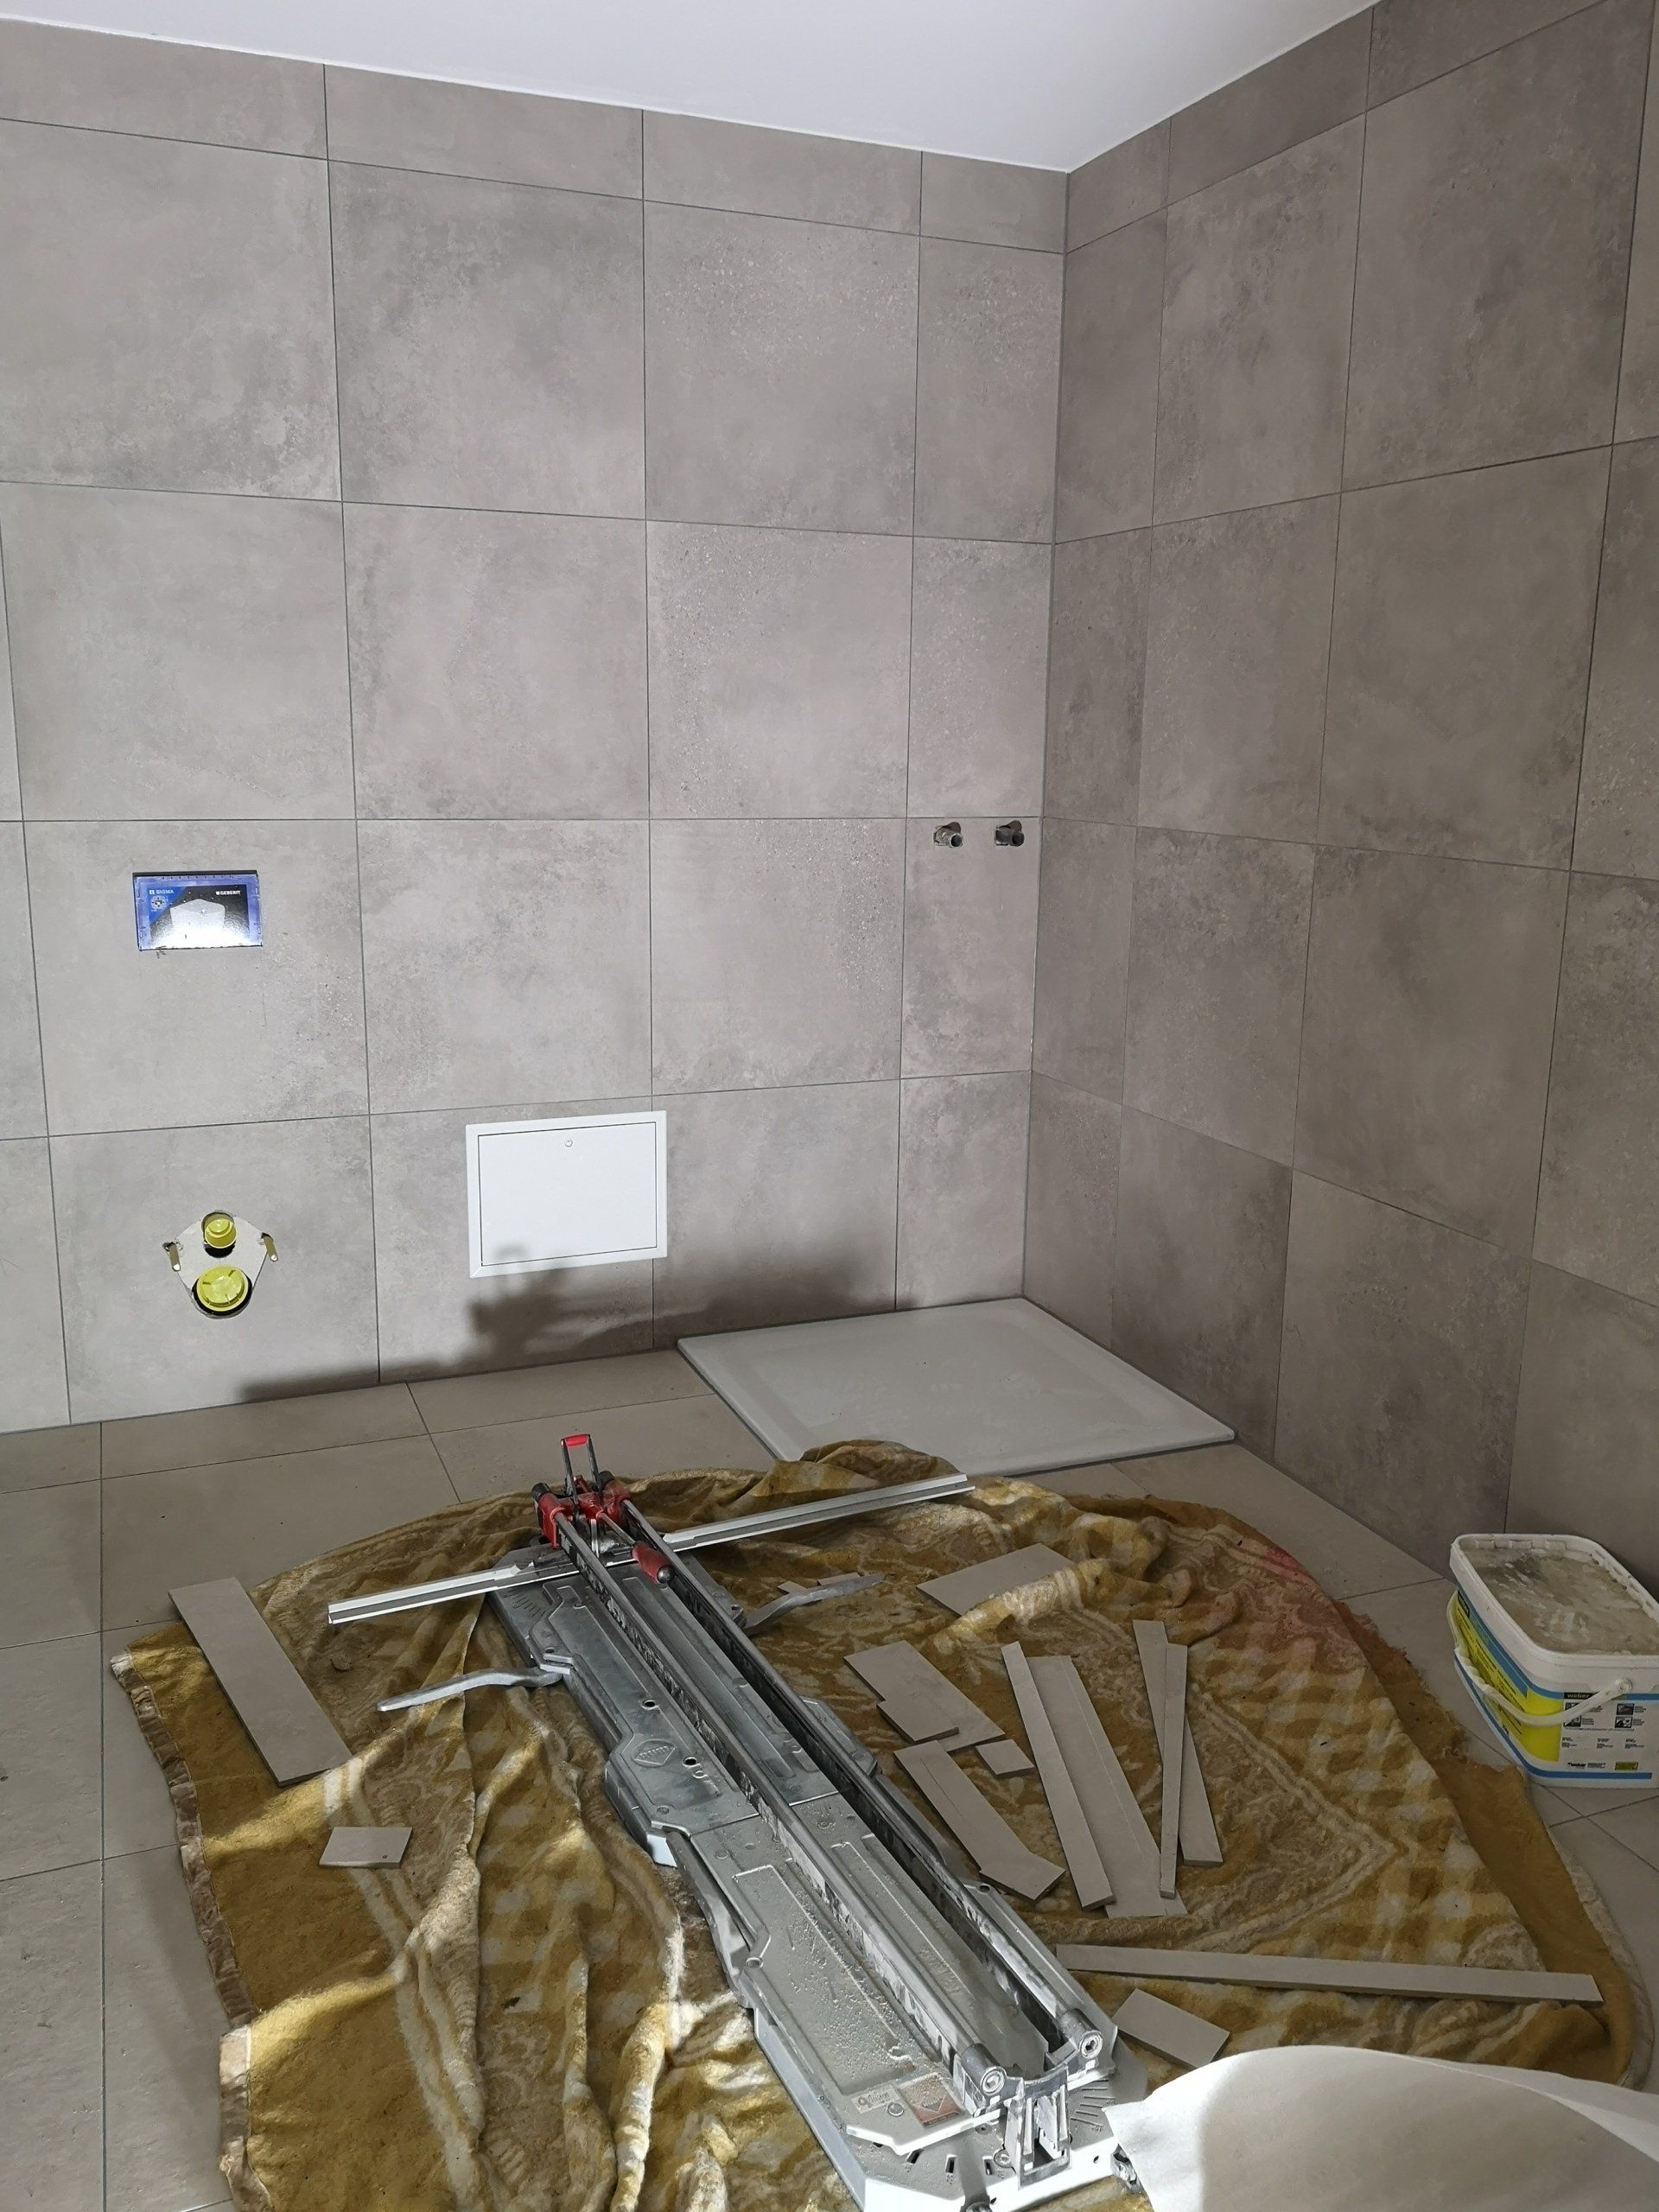 Salle de bain en cours de rénovation complète